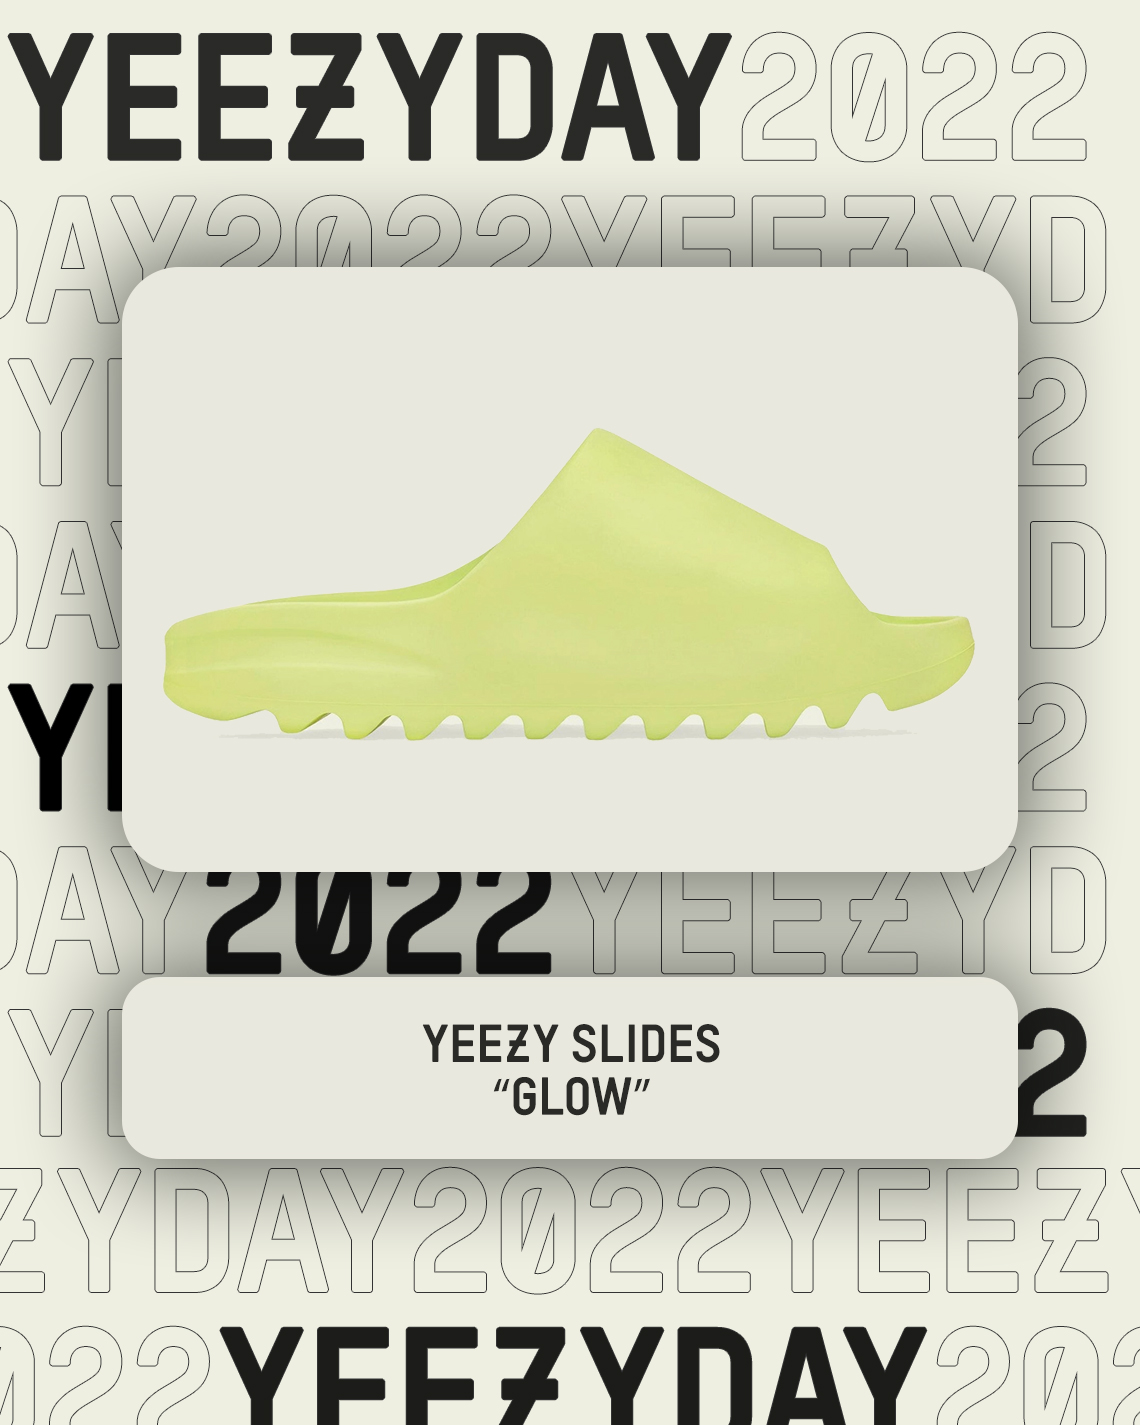 Yeezy Day 2022 Yeezy Slides Glow